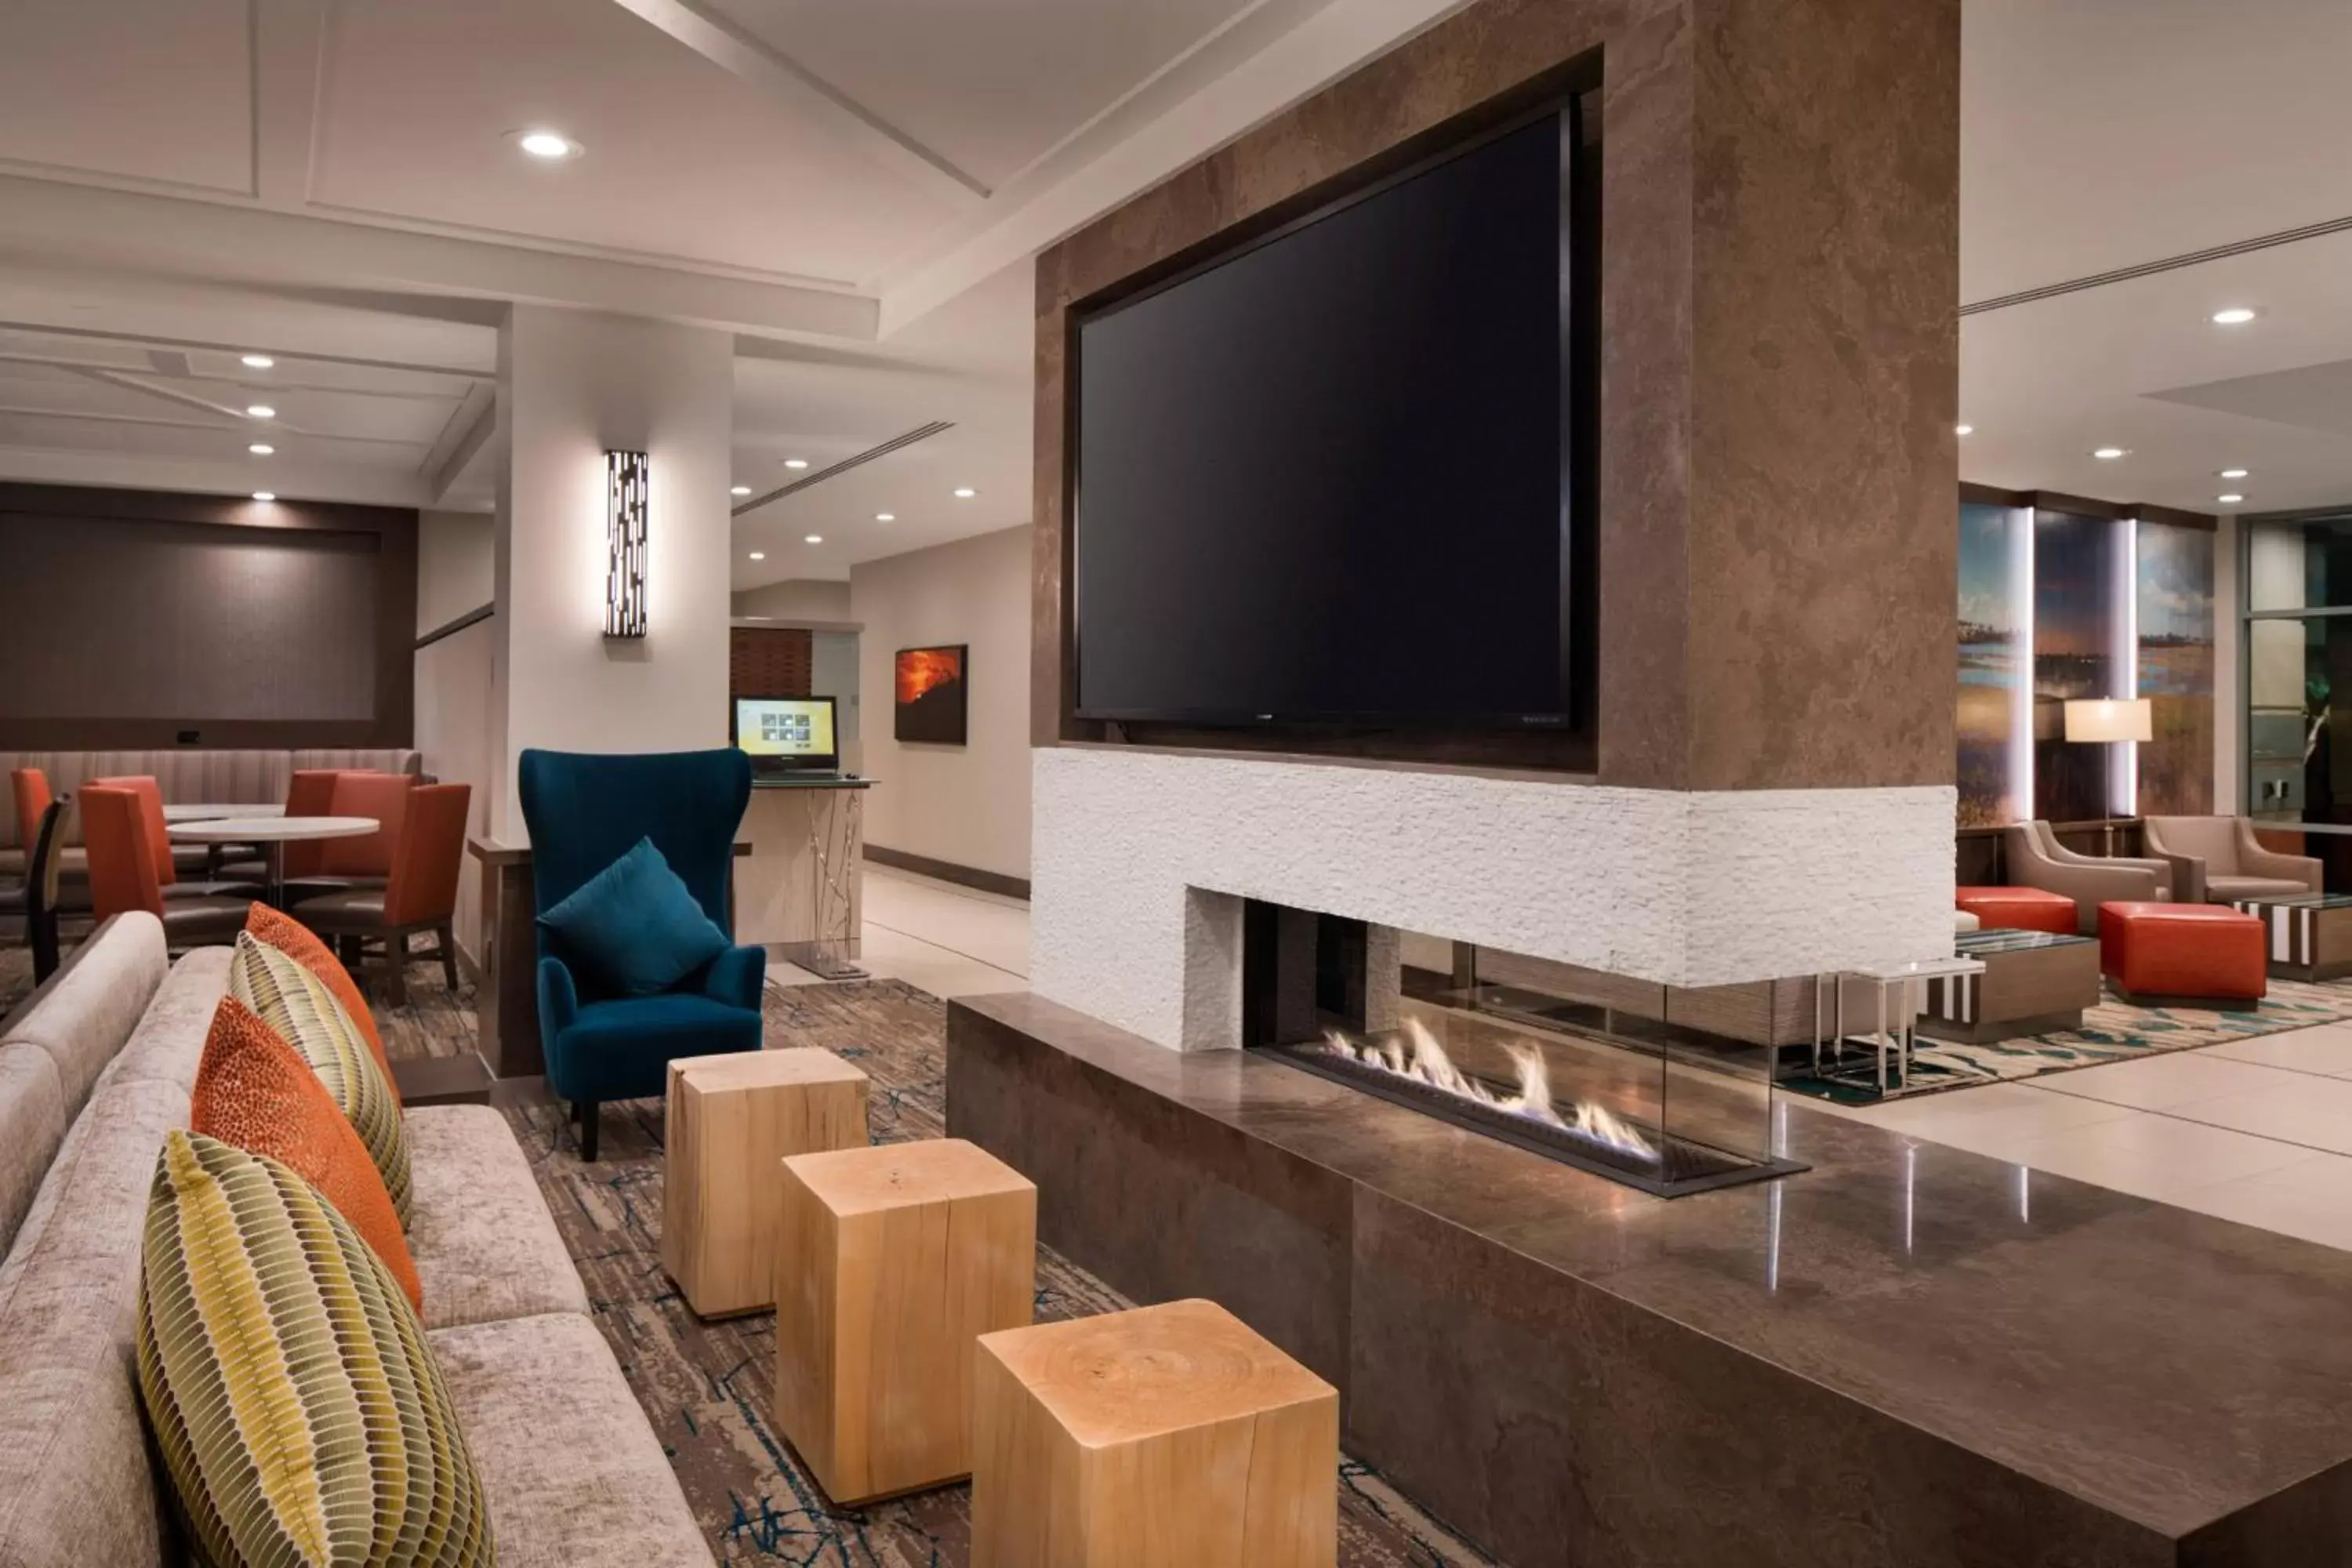 Lobby or reception, TV/Entertainment Center in Residence Inn Irvine John Wayne Airport Orange County